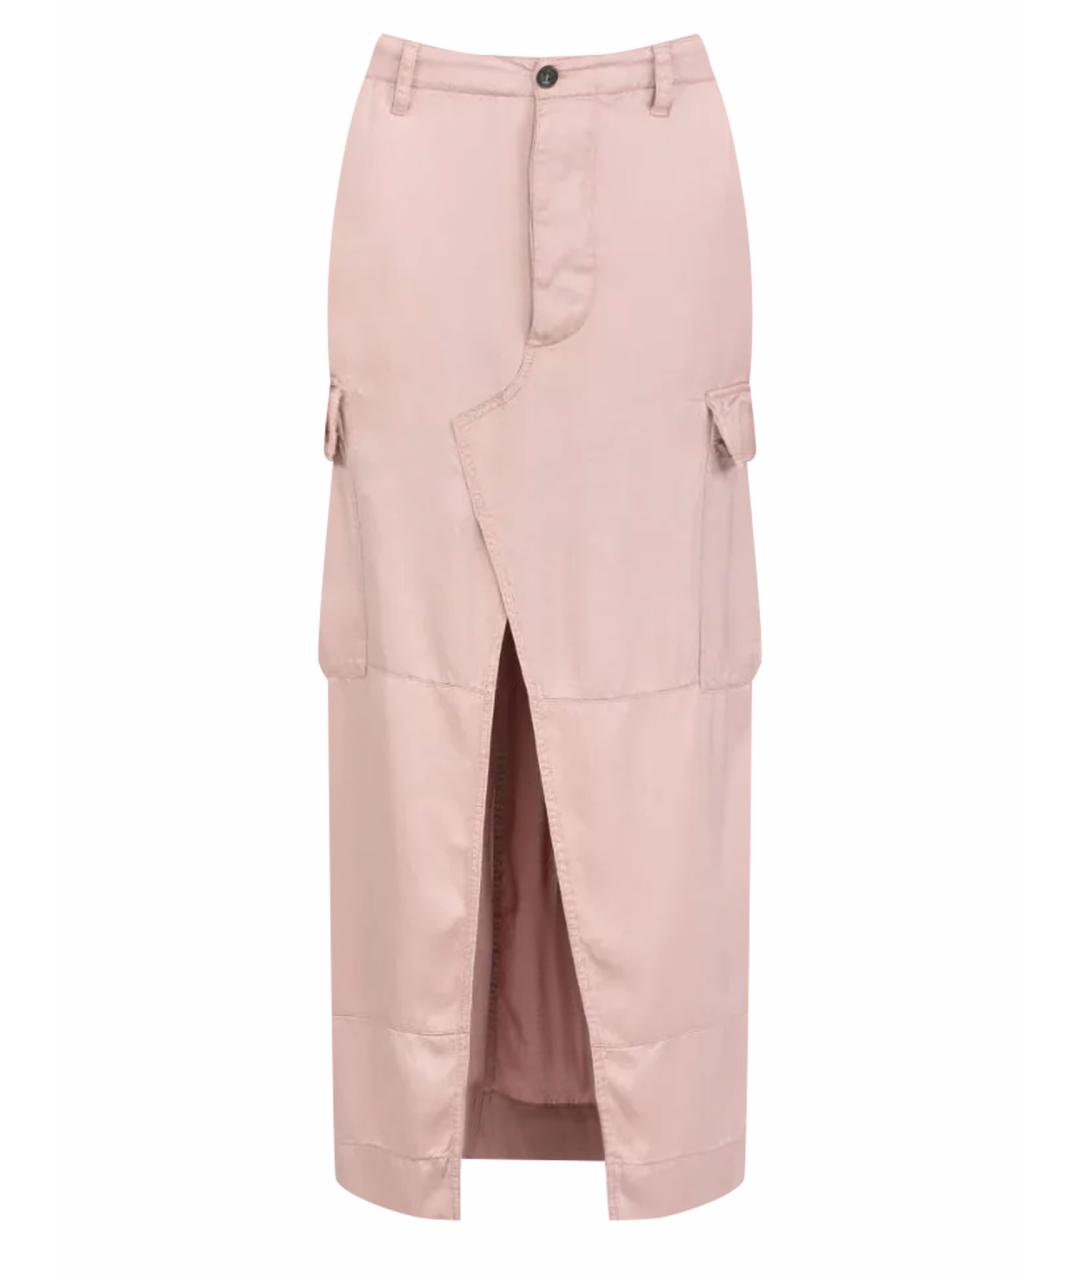 NO. 21 Розовая юбка макси, фото 1